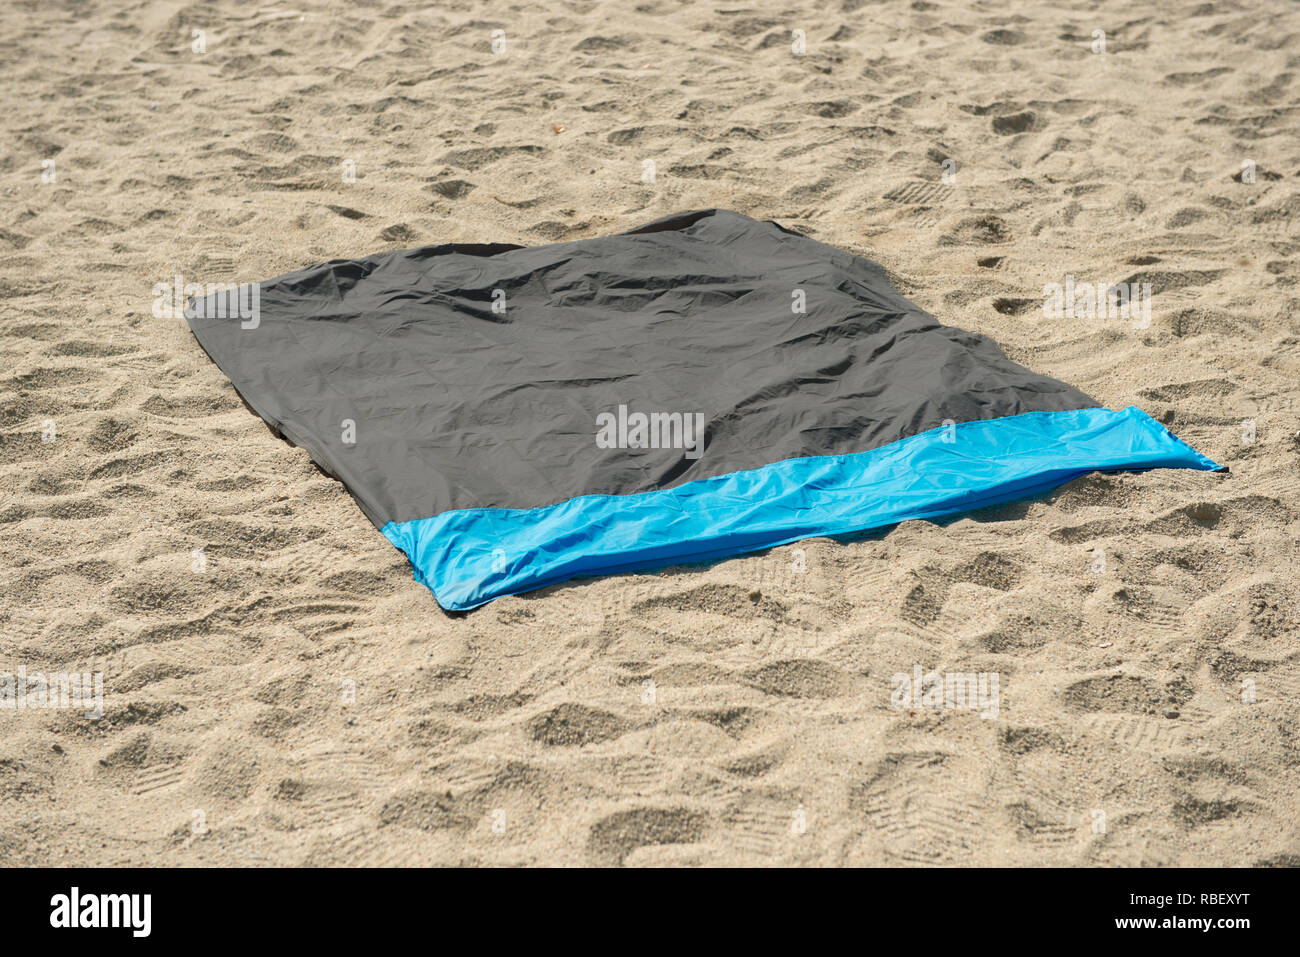 Wasserdicht und Sandproof nylon Strand Decke auf Sand. Sehr dünne Plane  oder Stellfläche für Outdoor-Aktivitäten genutzt, als Barriere gegen den  Sand oder Erde Stockfotografie - Alamy